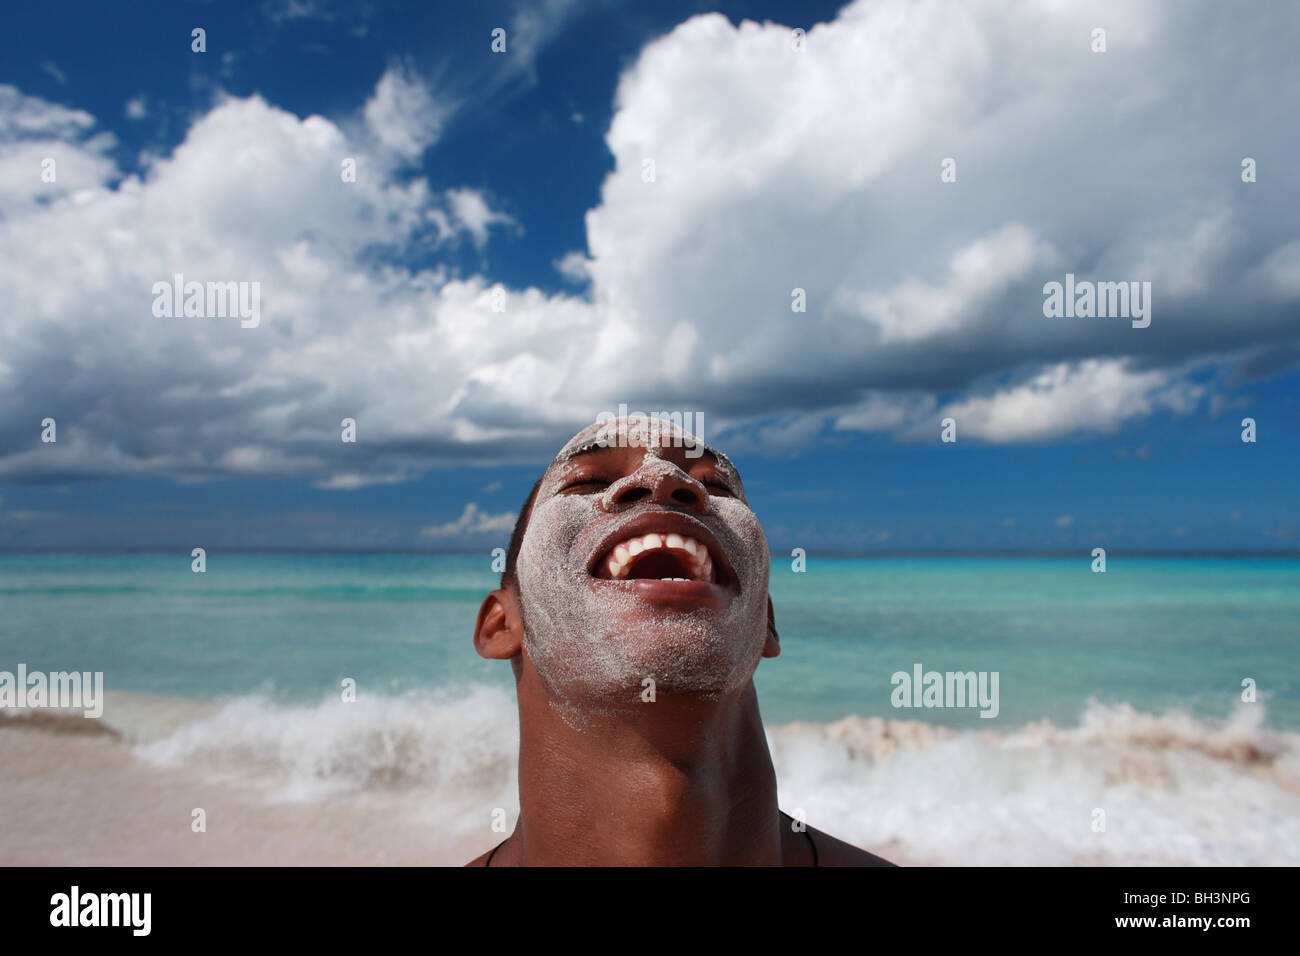 Jeune homme sur la plage avec du sable sur son visage, rire Banque D'Images